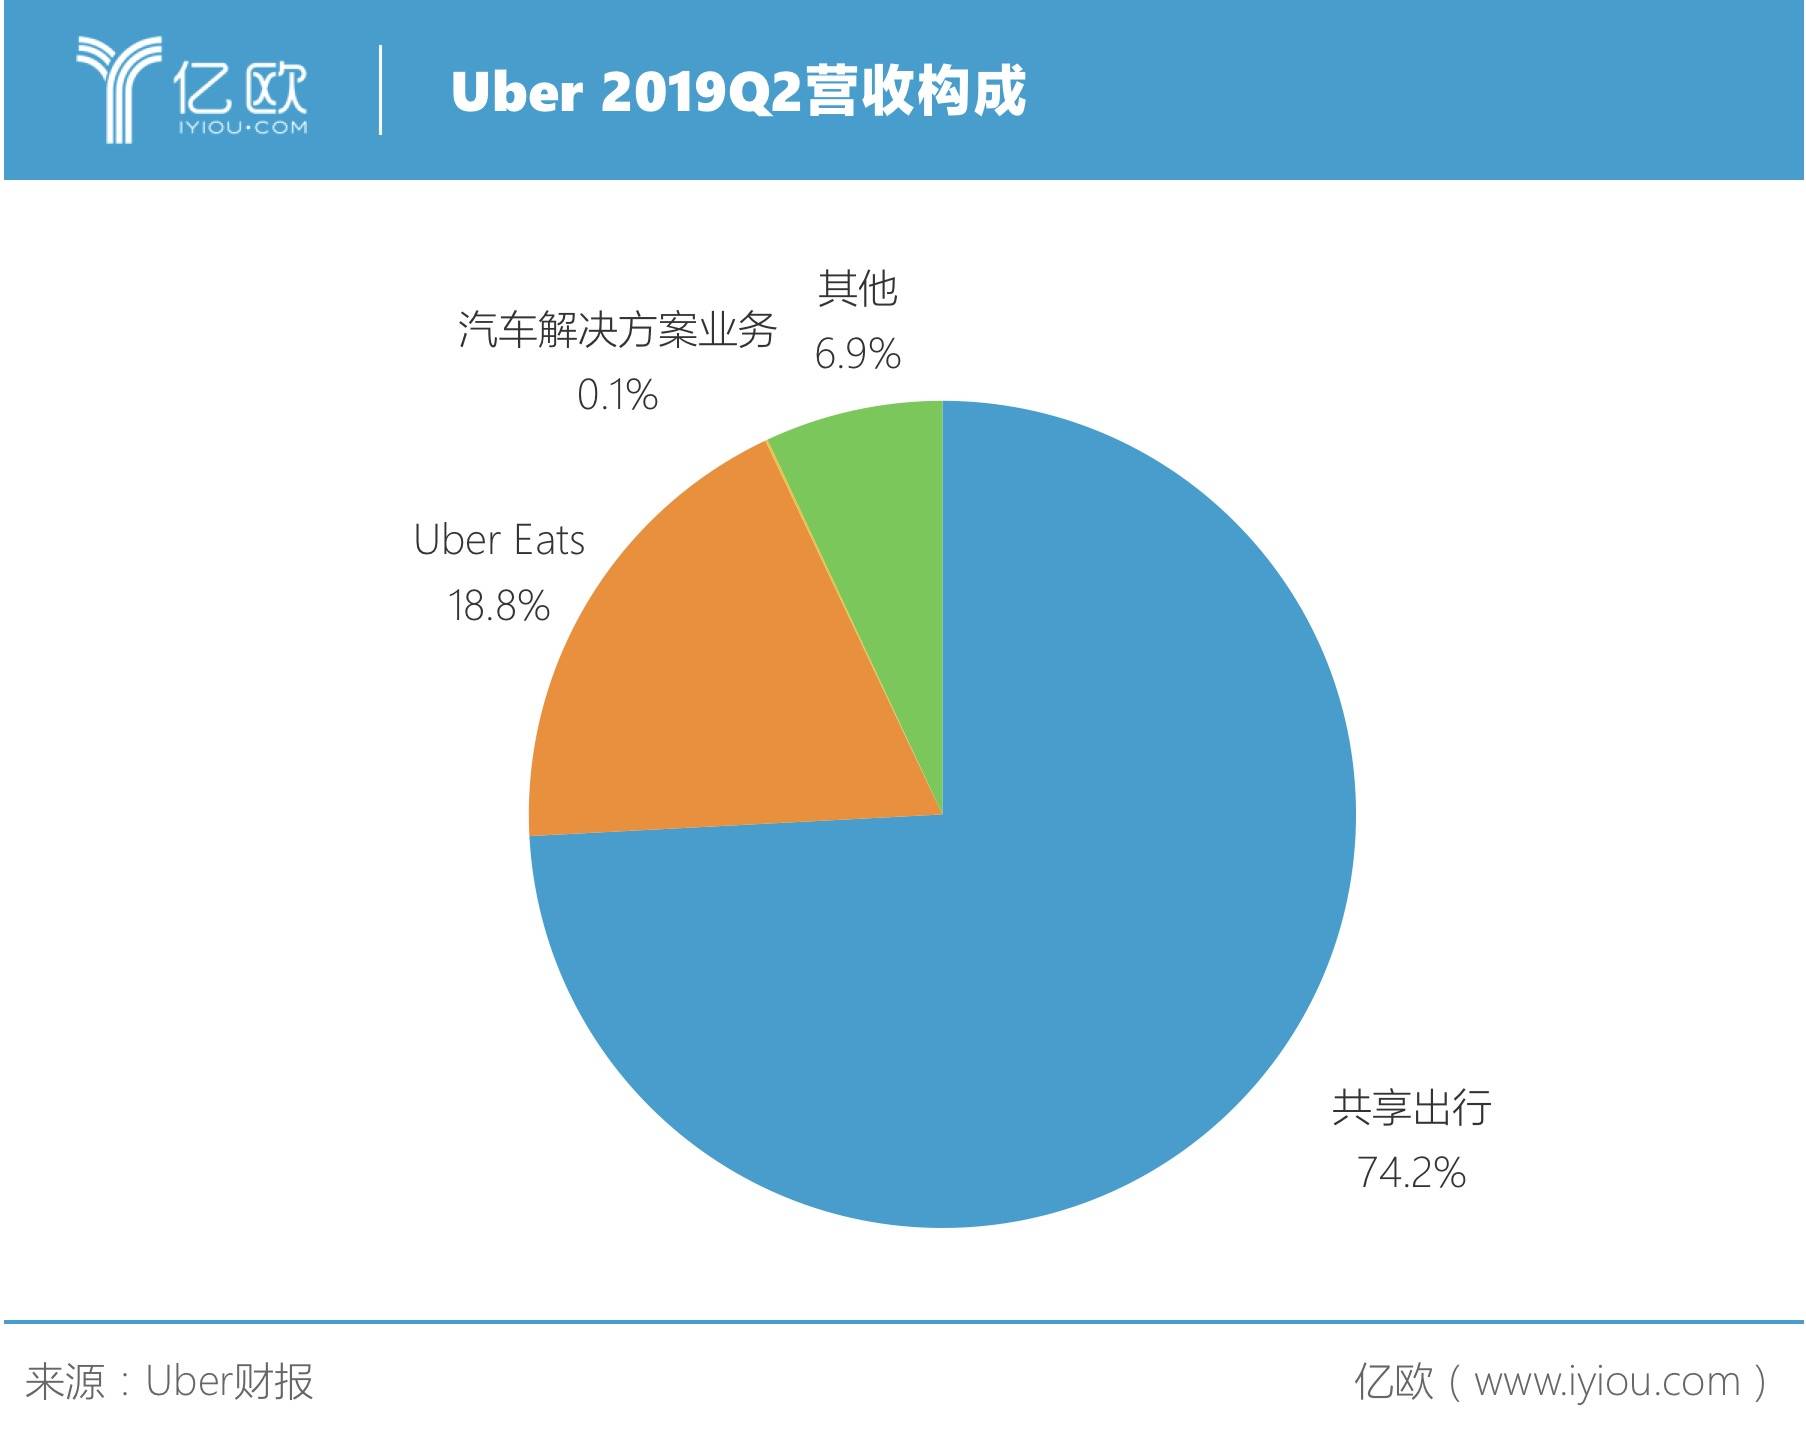 Uber 2019Q2营收构成